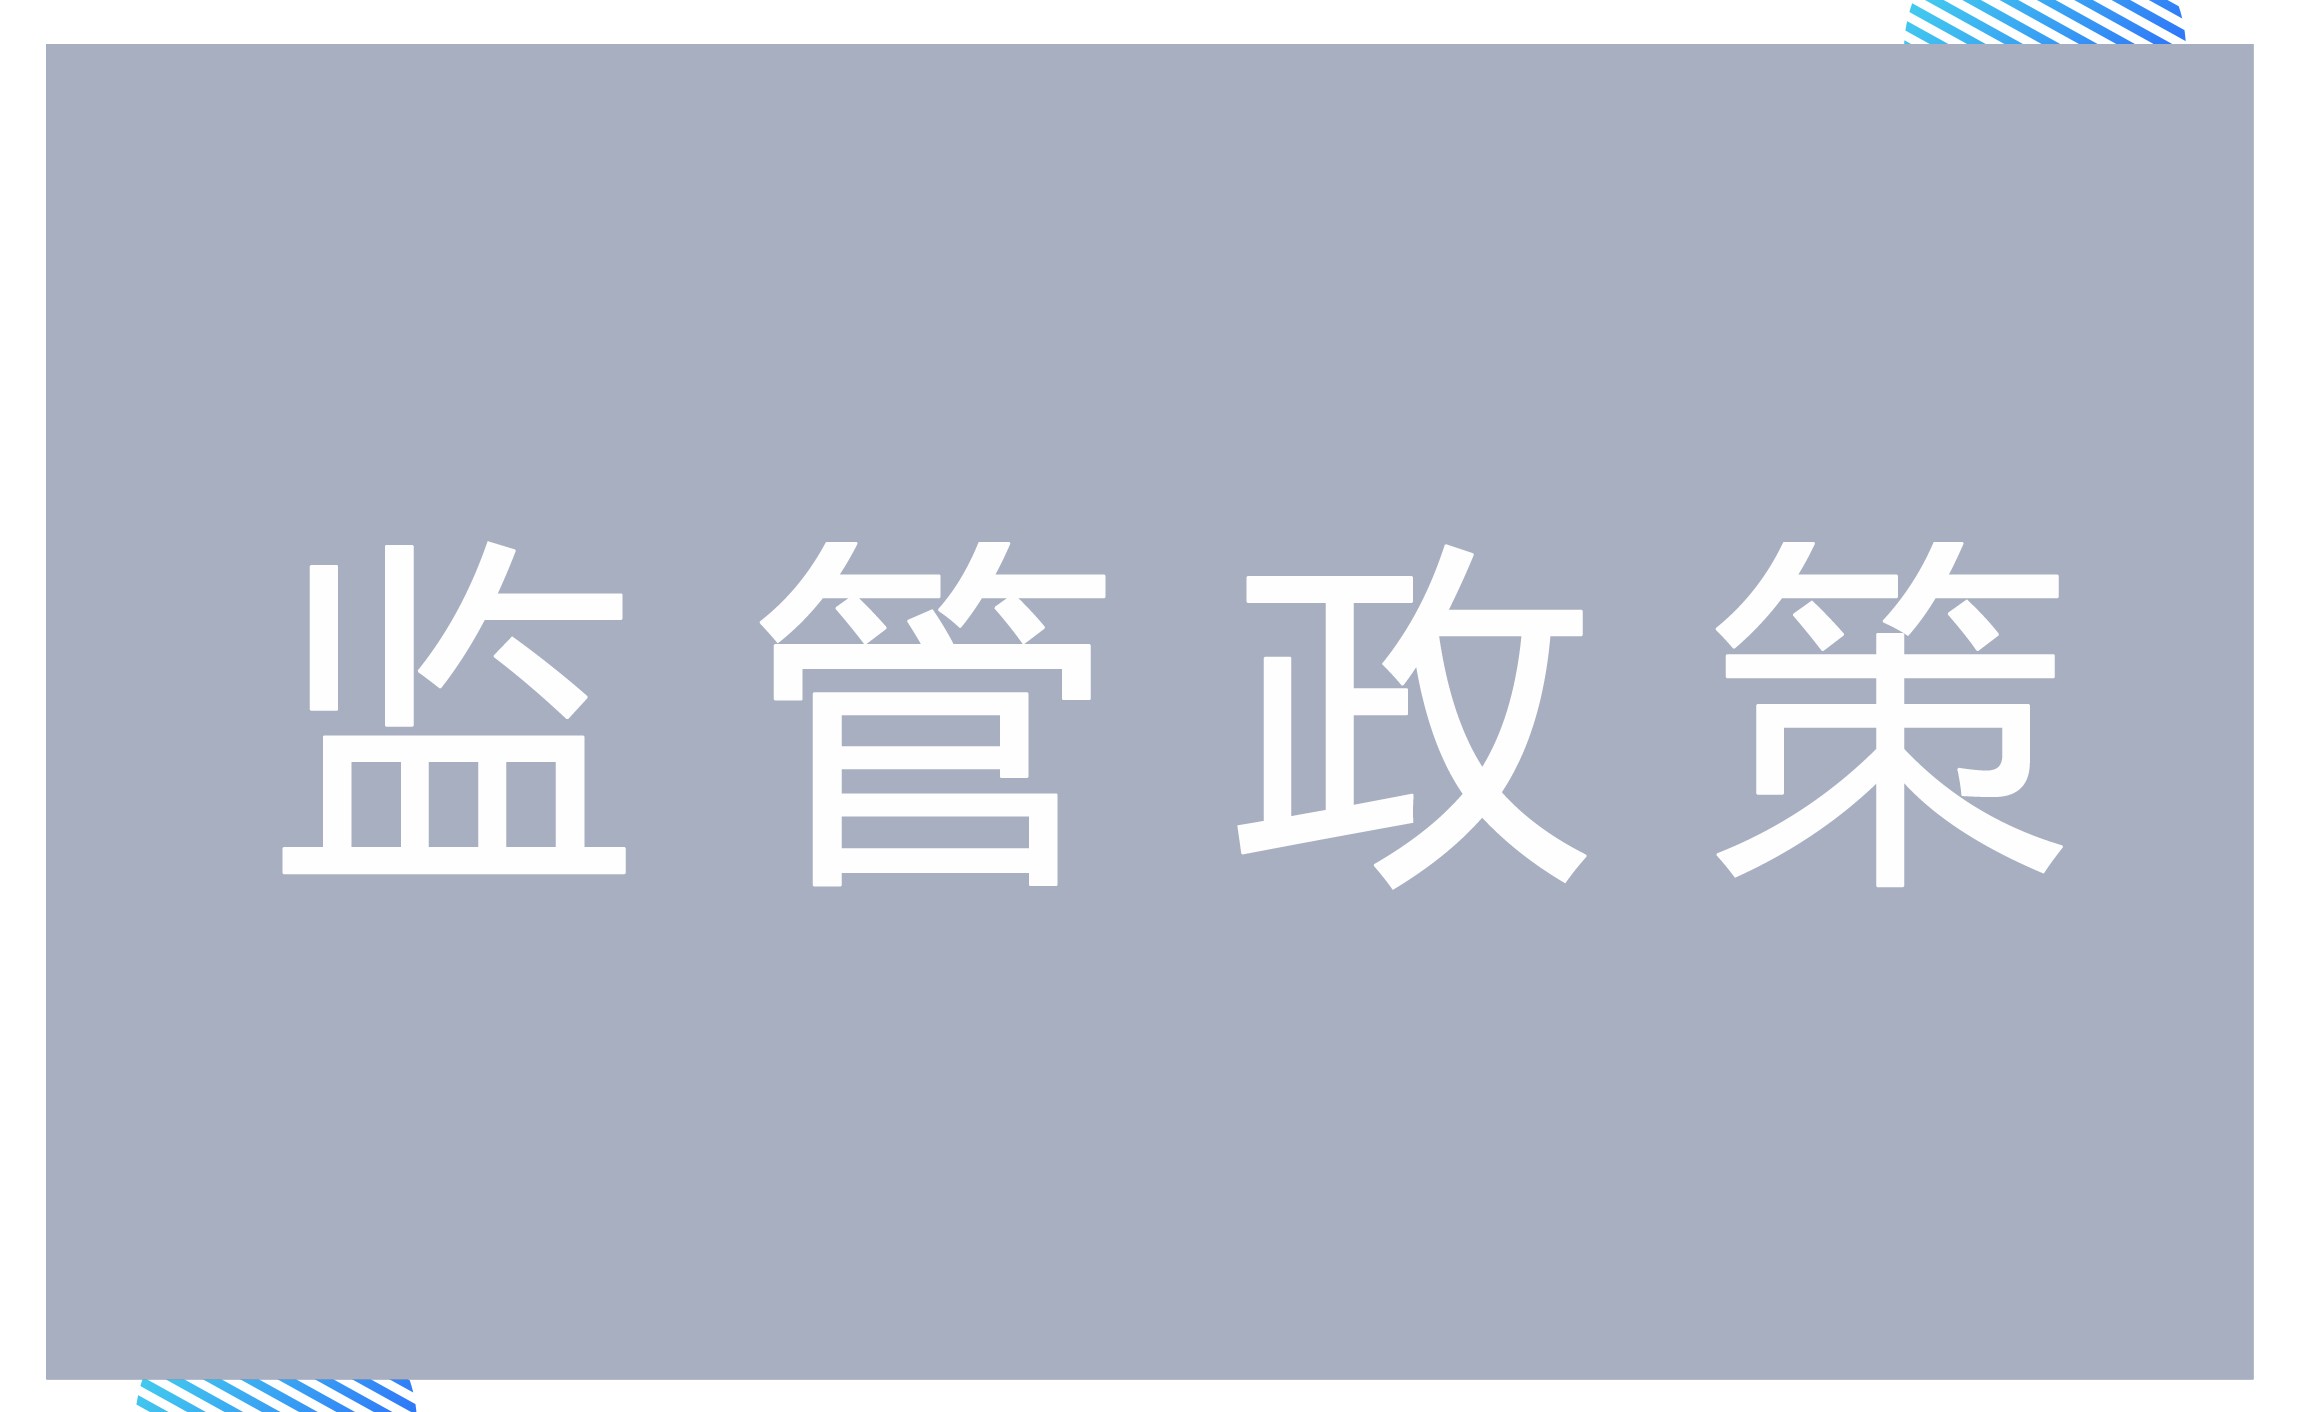 辽宁省商业保理公司设立、变更和终止工作指引（暂行）